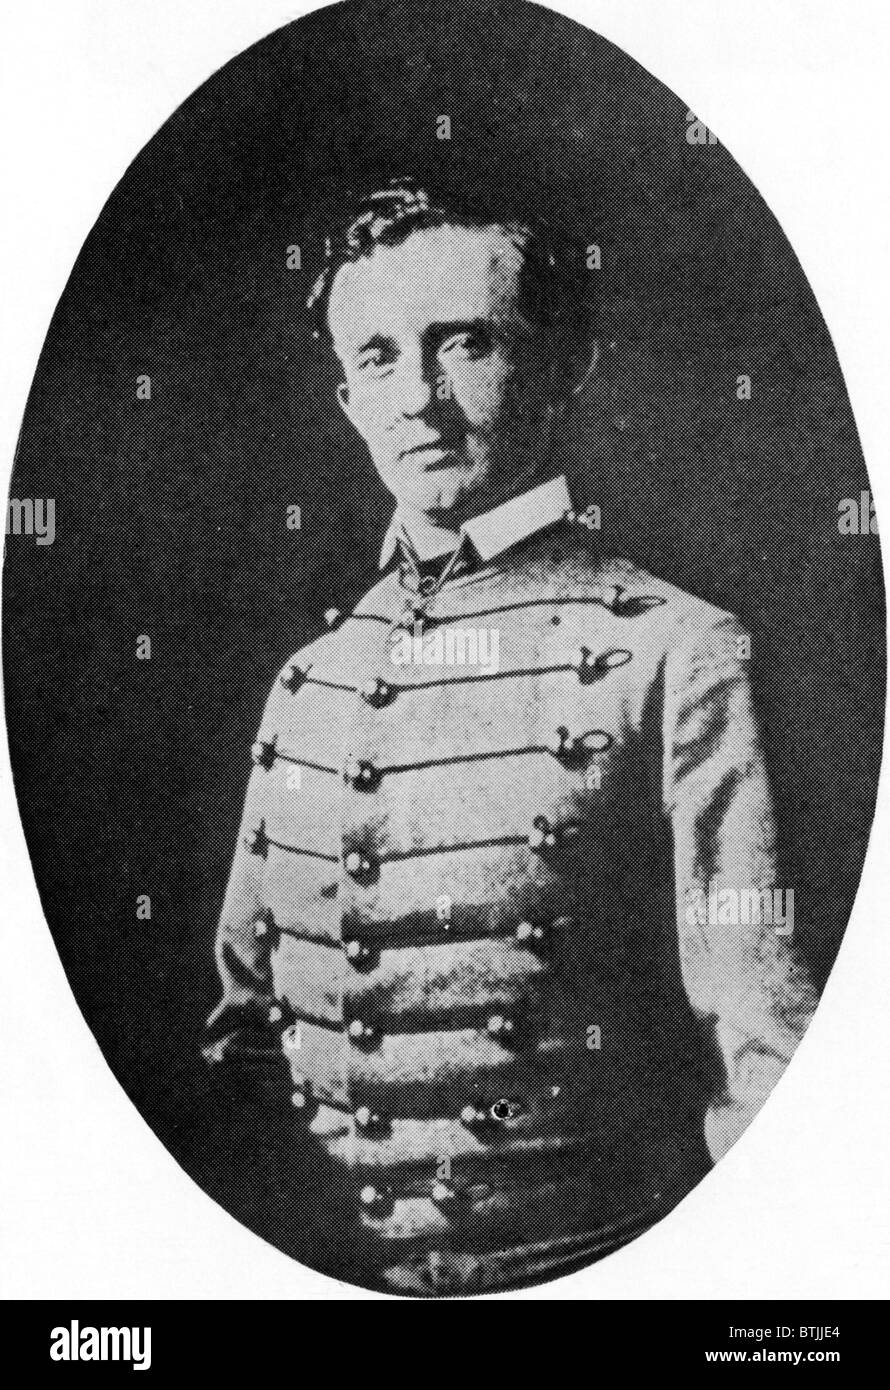 Le général George Custer comme un Cadet de West Point. Années 1800. Avec la permission des Archives CSU/Everett Collection Banque D'Images